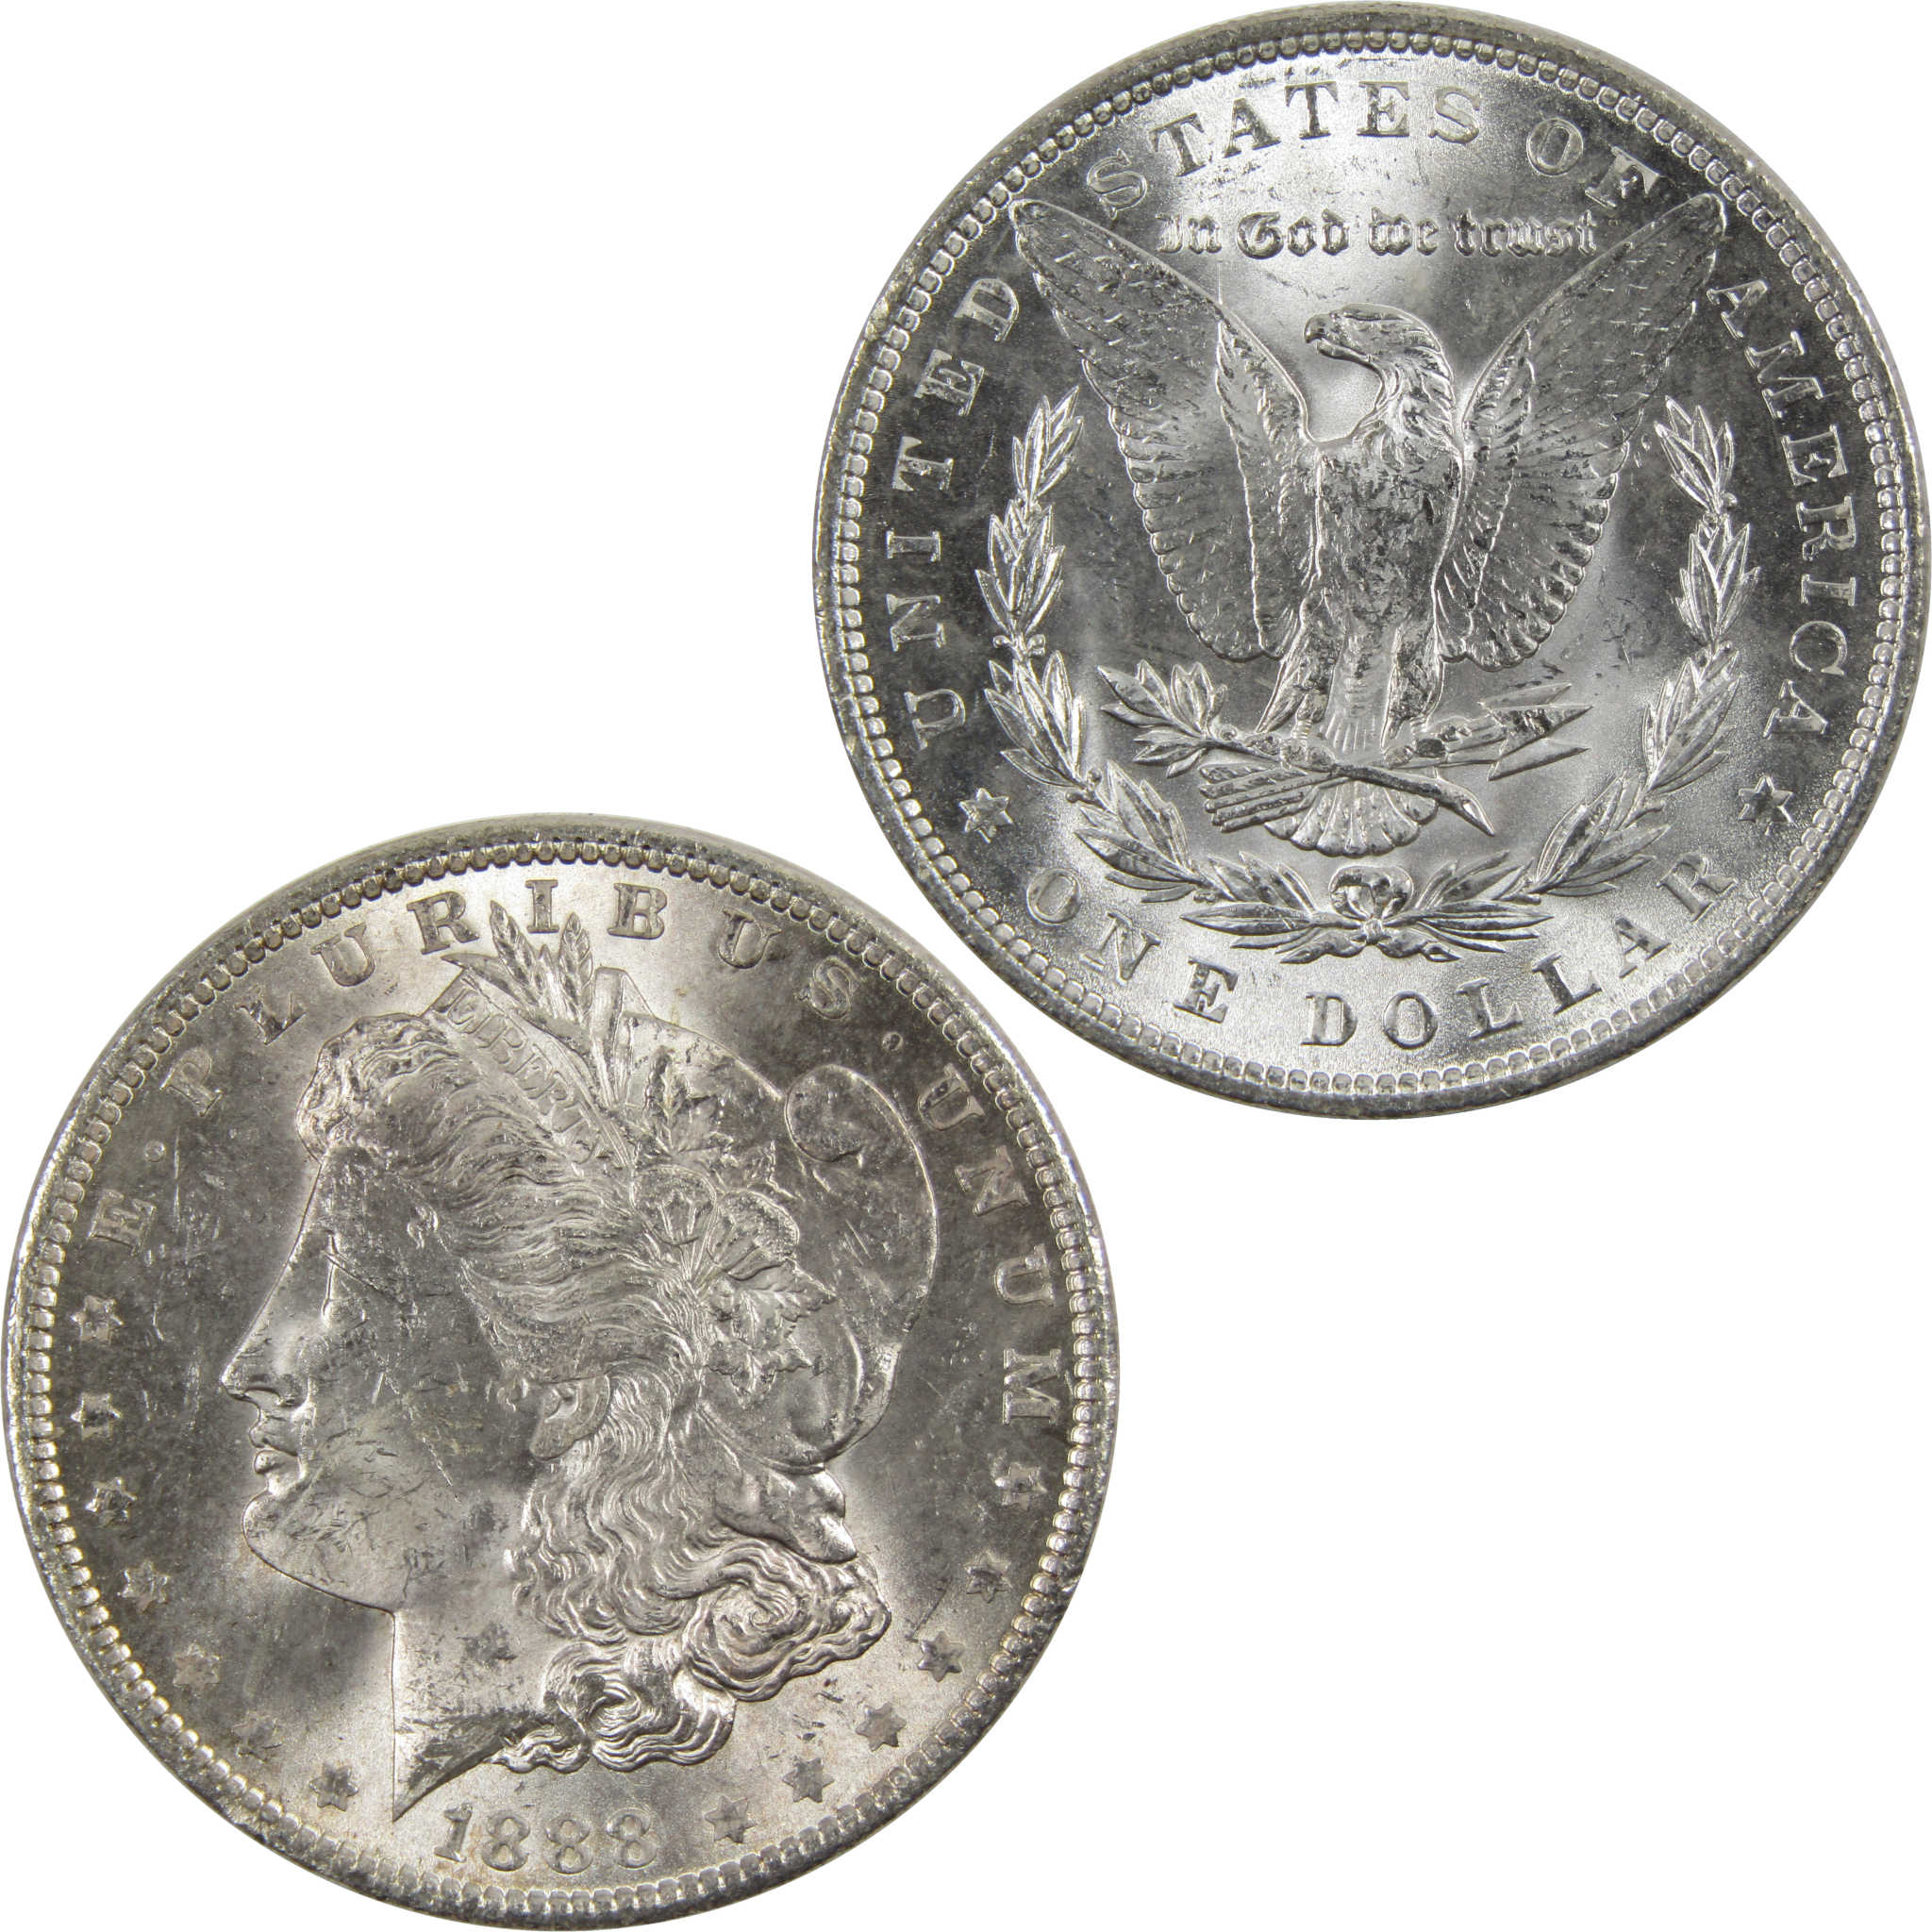 1888 Morgan Dollar BU Uncirculated 90% Silver $1 Coin SKU:I6036 - Morgan coin - Morgan silver dollar - Morgan silver dollar for sale - Profile Coins &amp; Collectibles